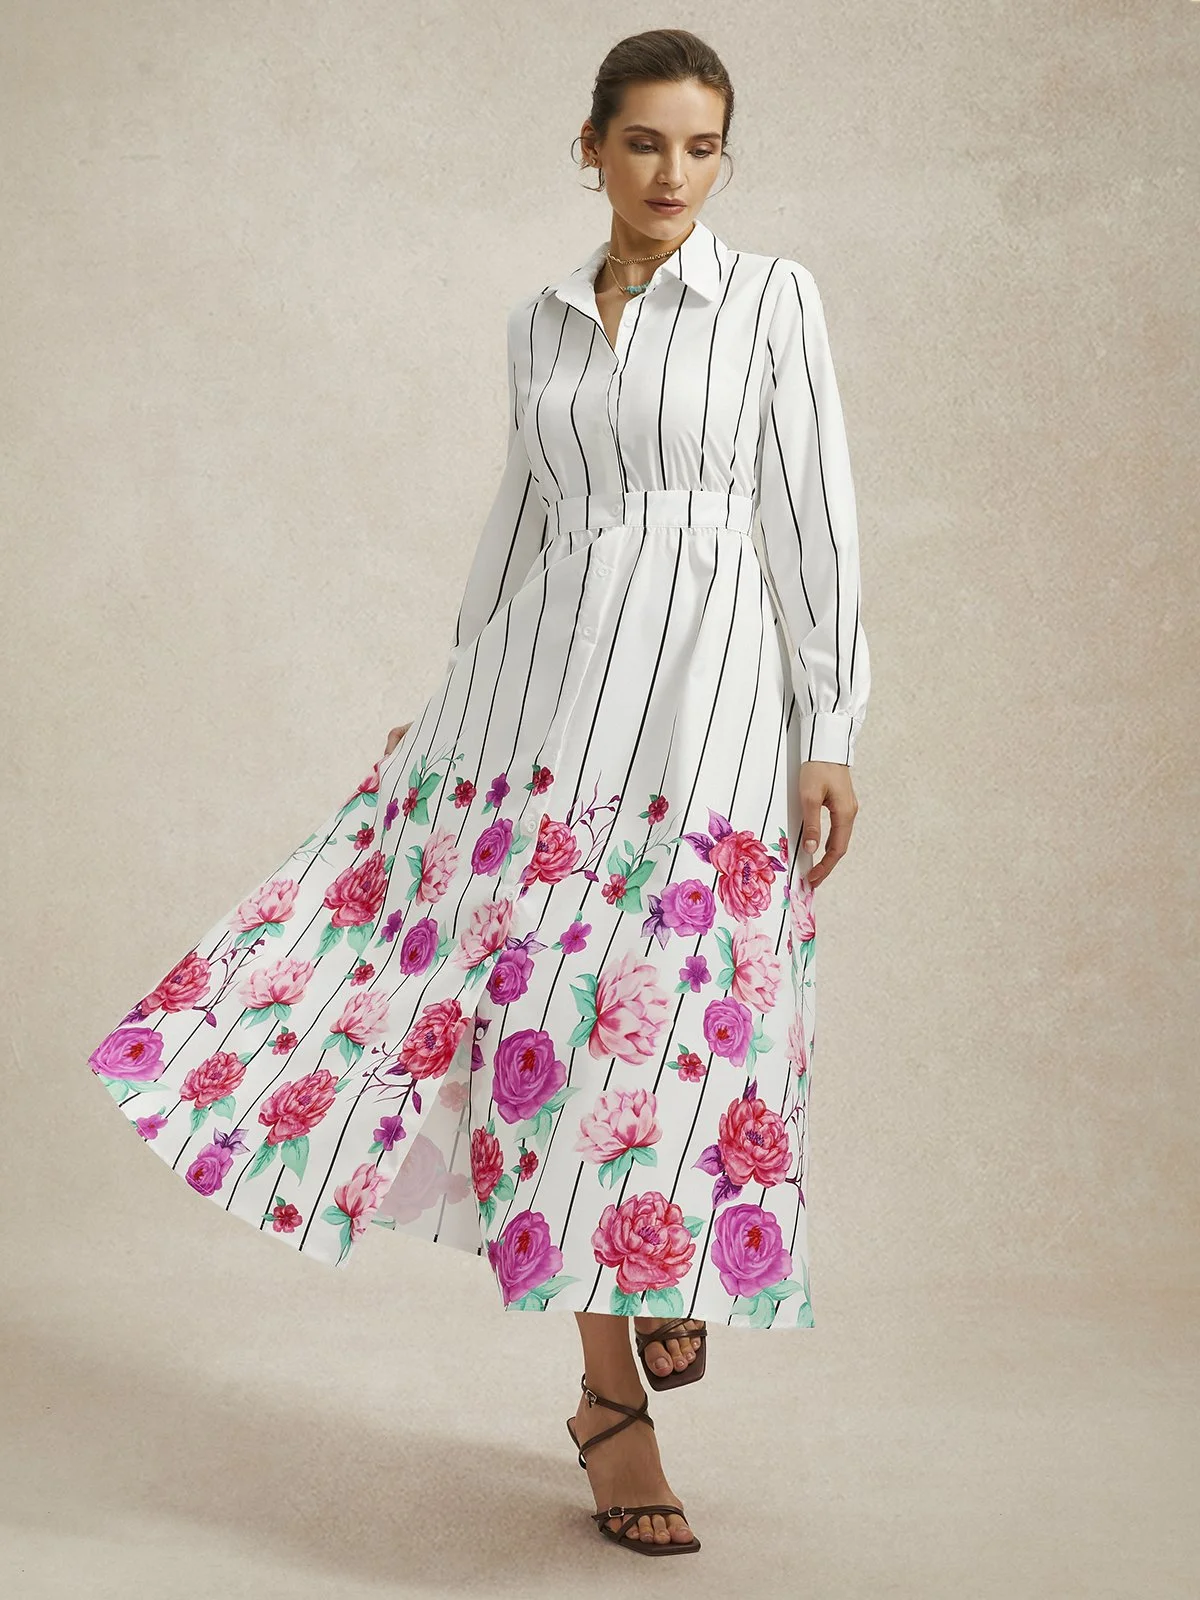 Robes Femmes Floral Printemps / Automne Élégant Polyester Aucune élasticité Coupe Régulière Manches Longues Robe Chemise Col de Chemise